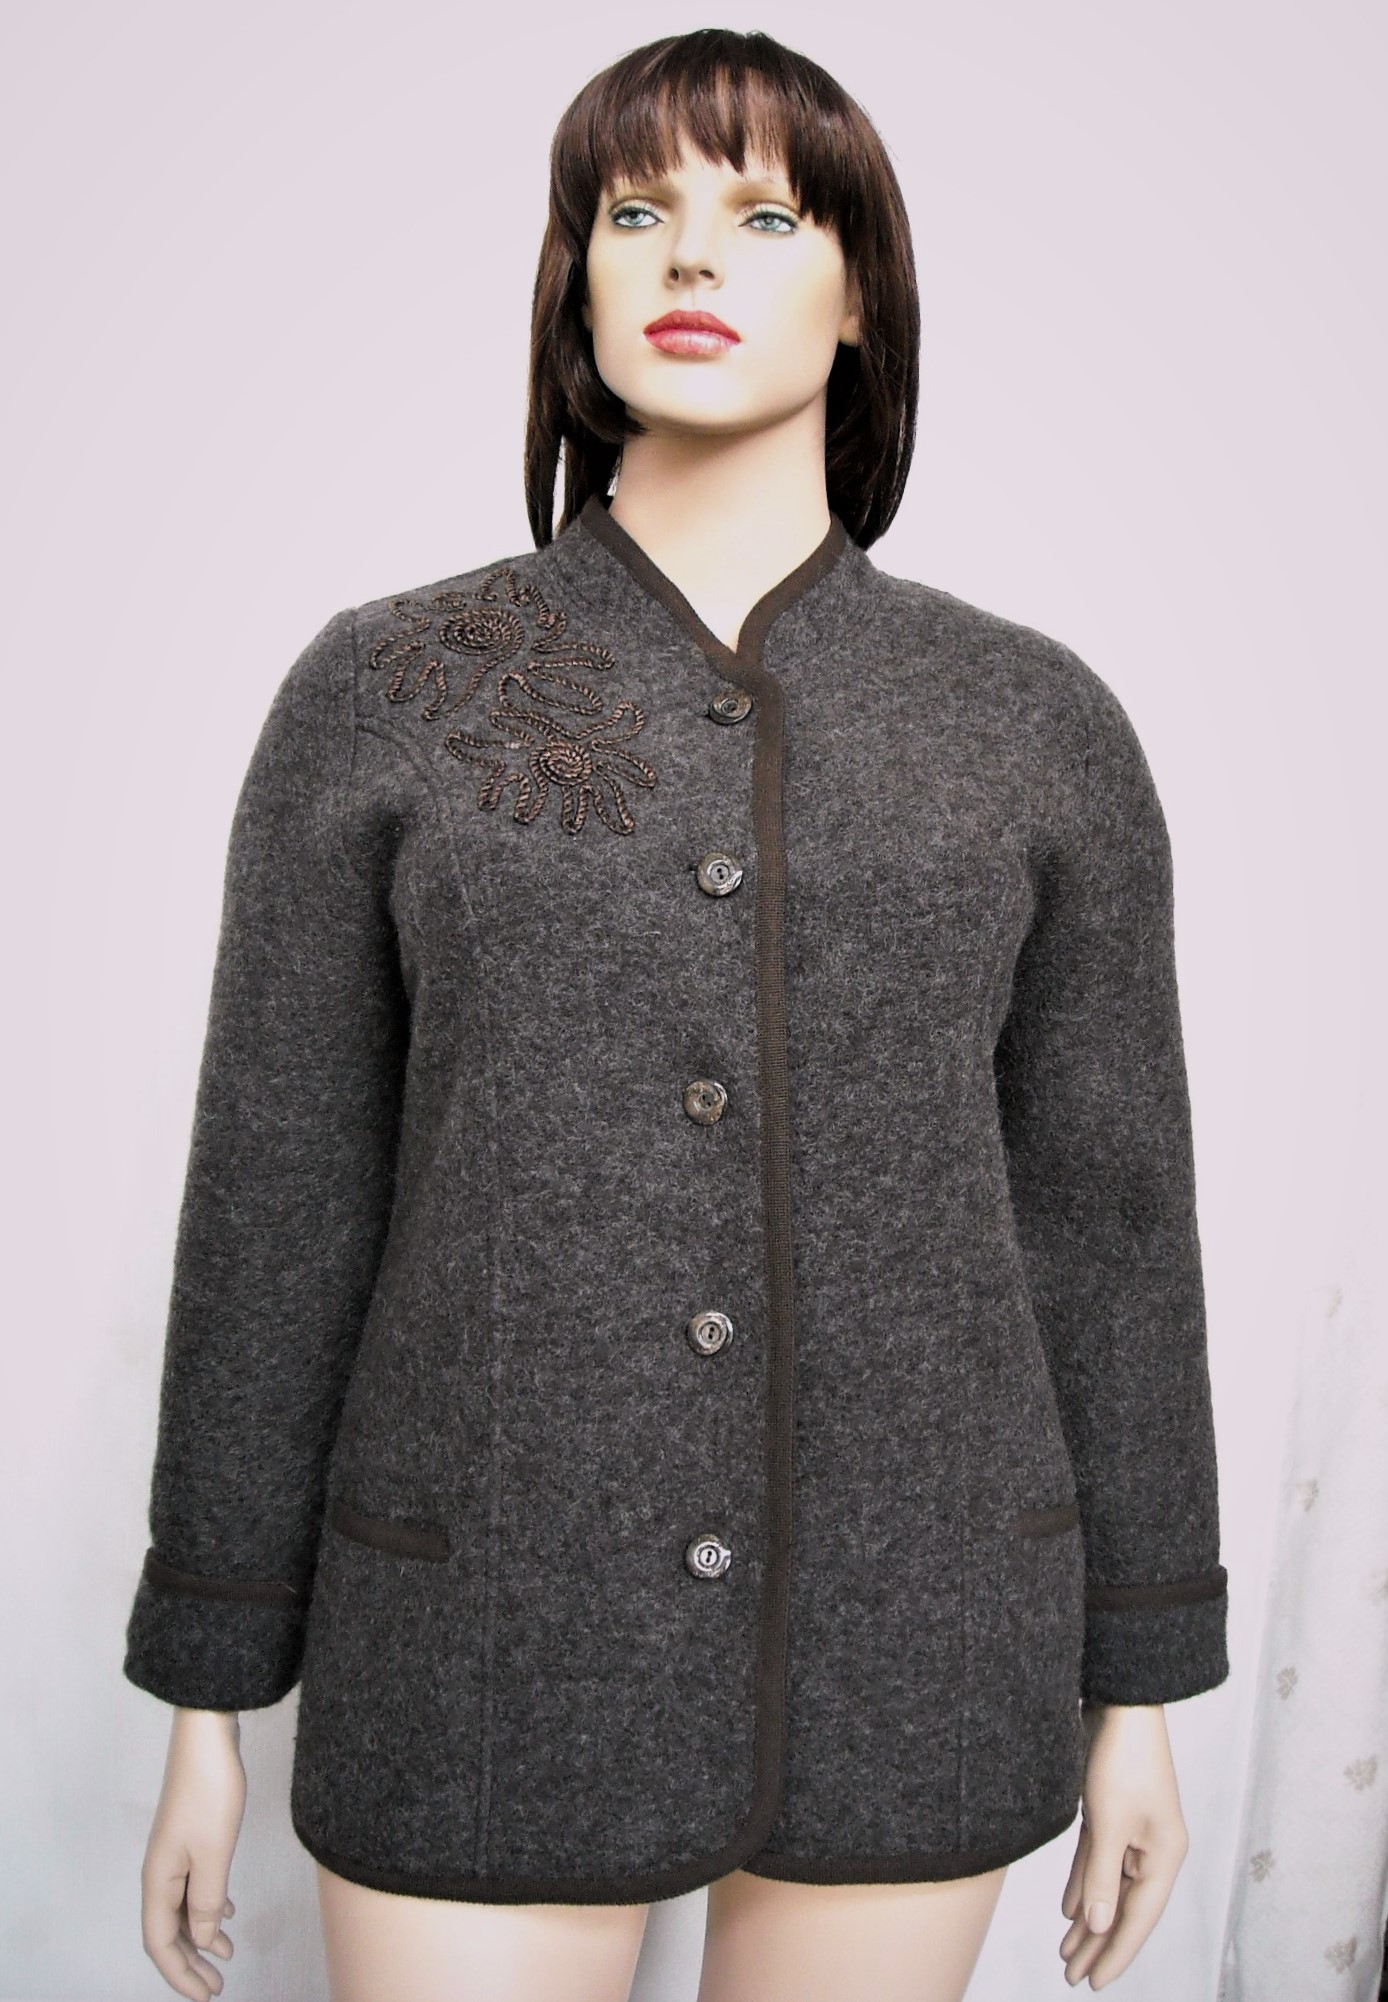 1661 Elena giacca lana cotta